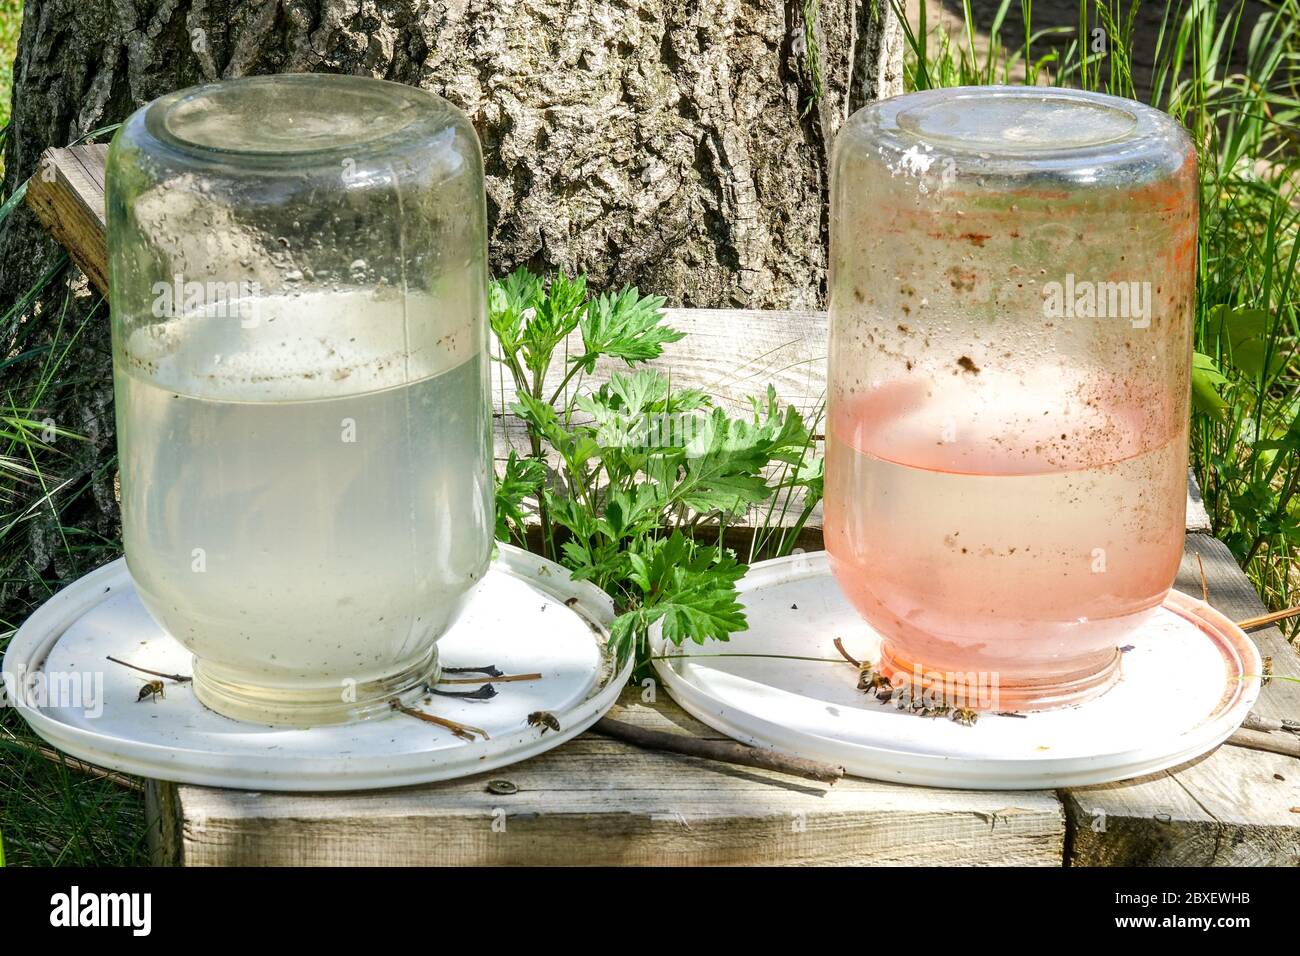 Bienenzuchsernährung mit Zuckerwasser, Fütterung von Bienen Stockfoto